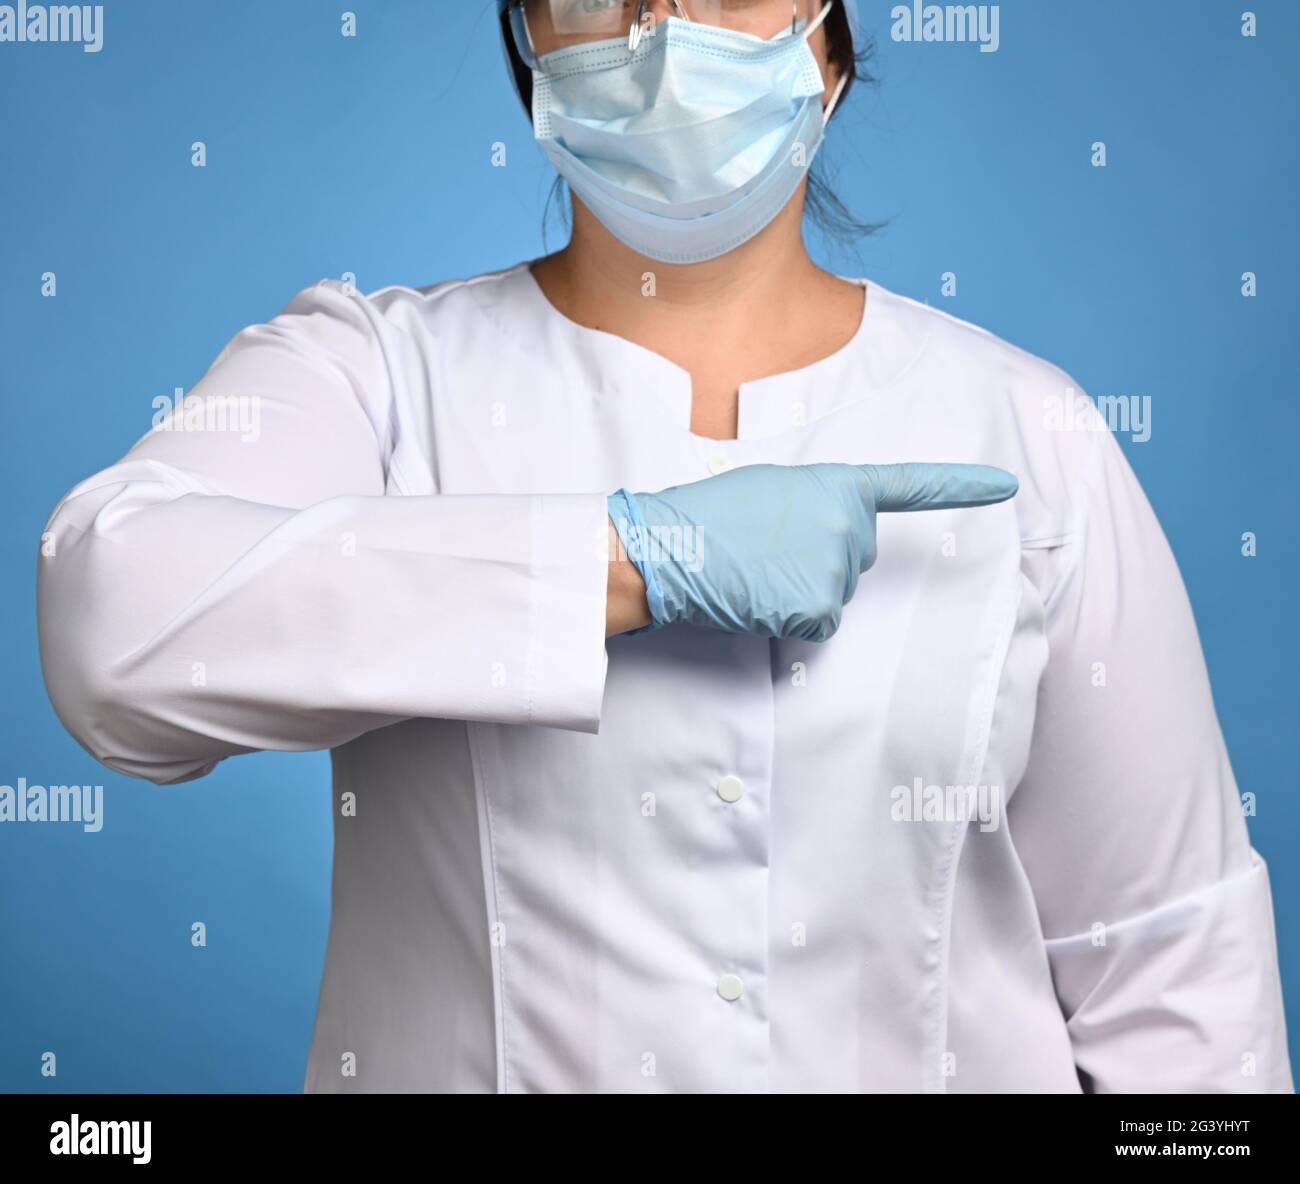 Femme Medic en manteau blanc avec boutons, sur ses mains portant des gants stériles bleus Banque D'Images